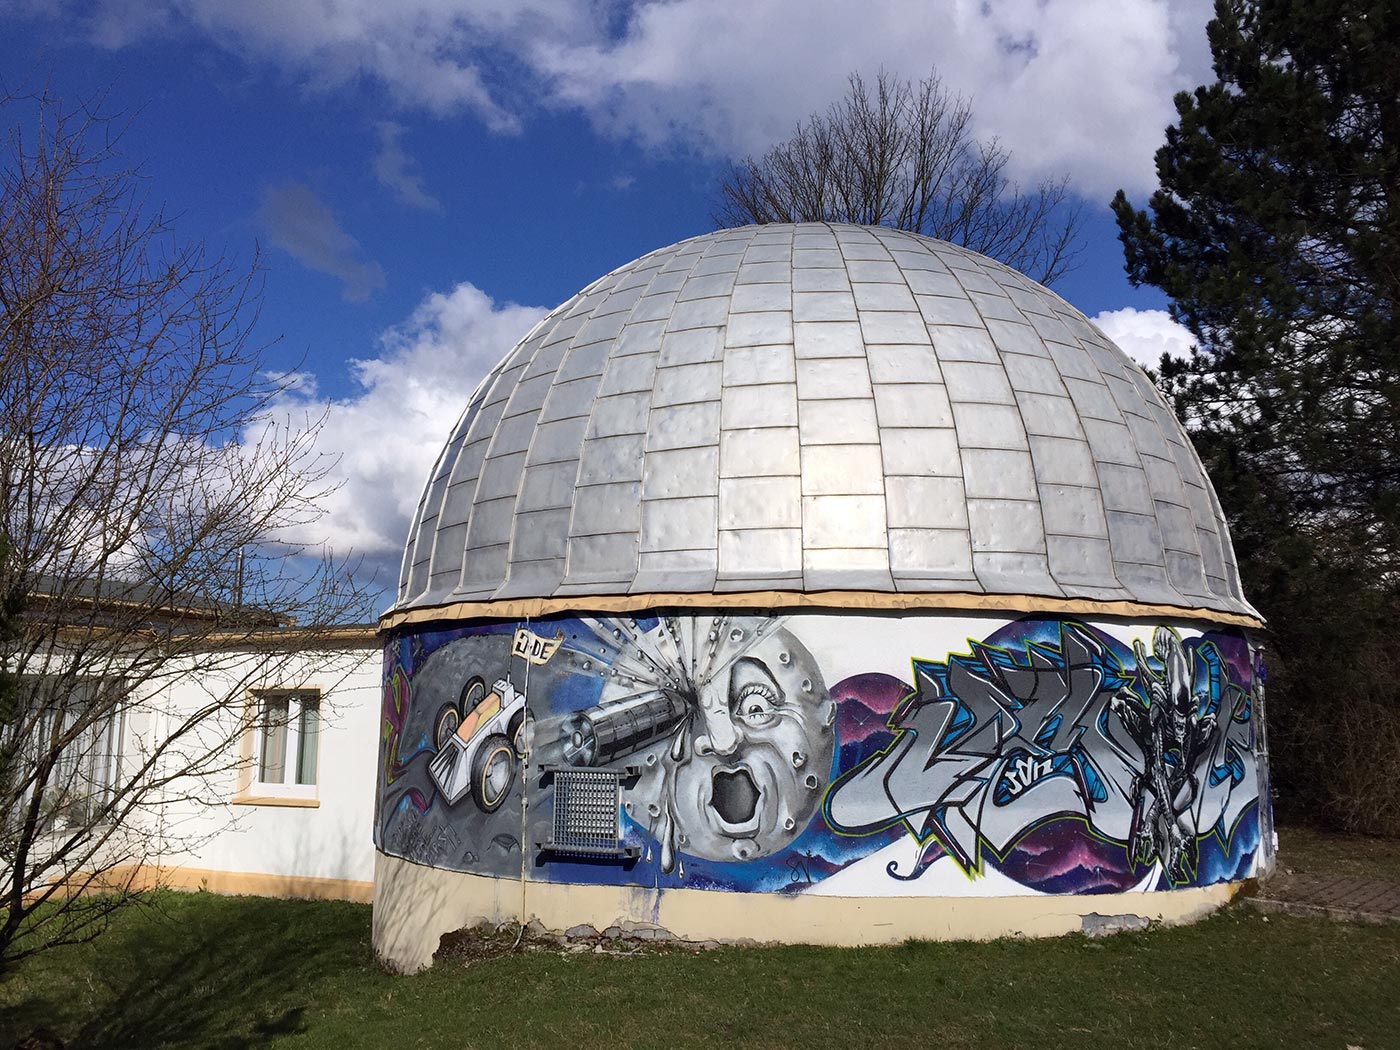 Sternwarte und Planetarium Suhl